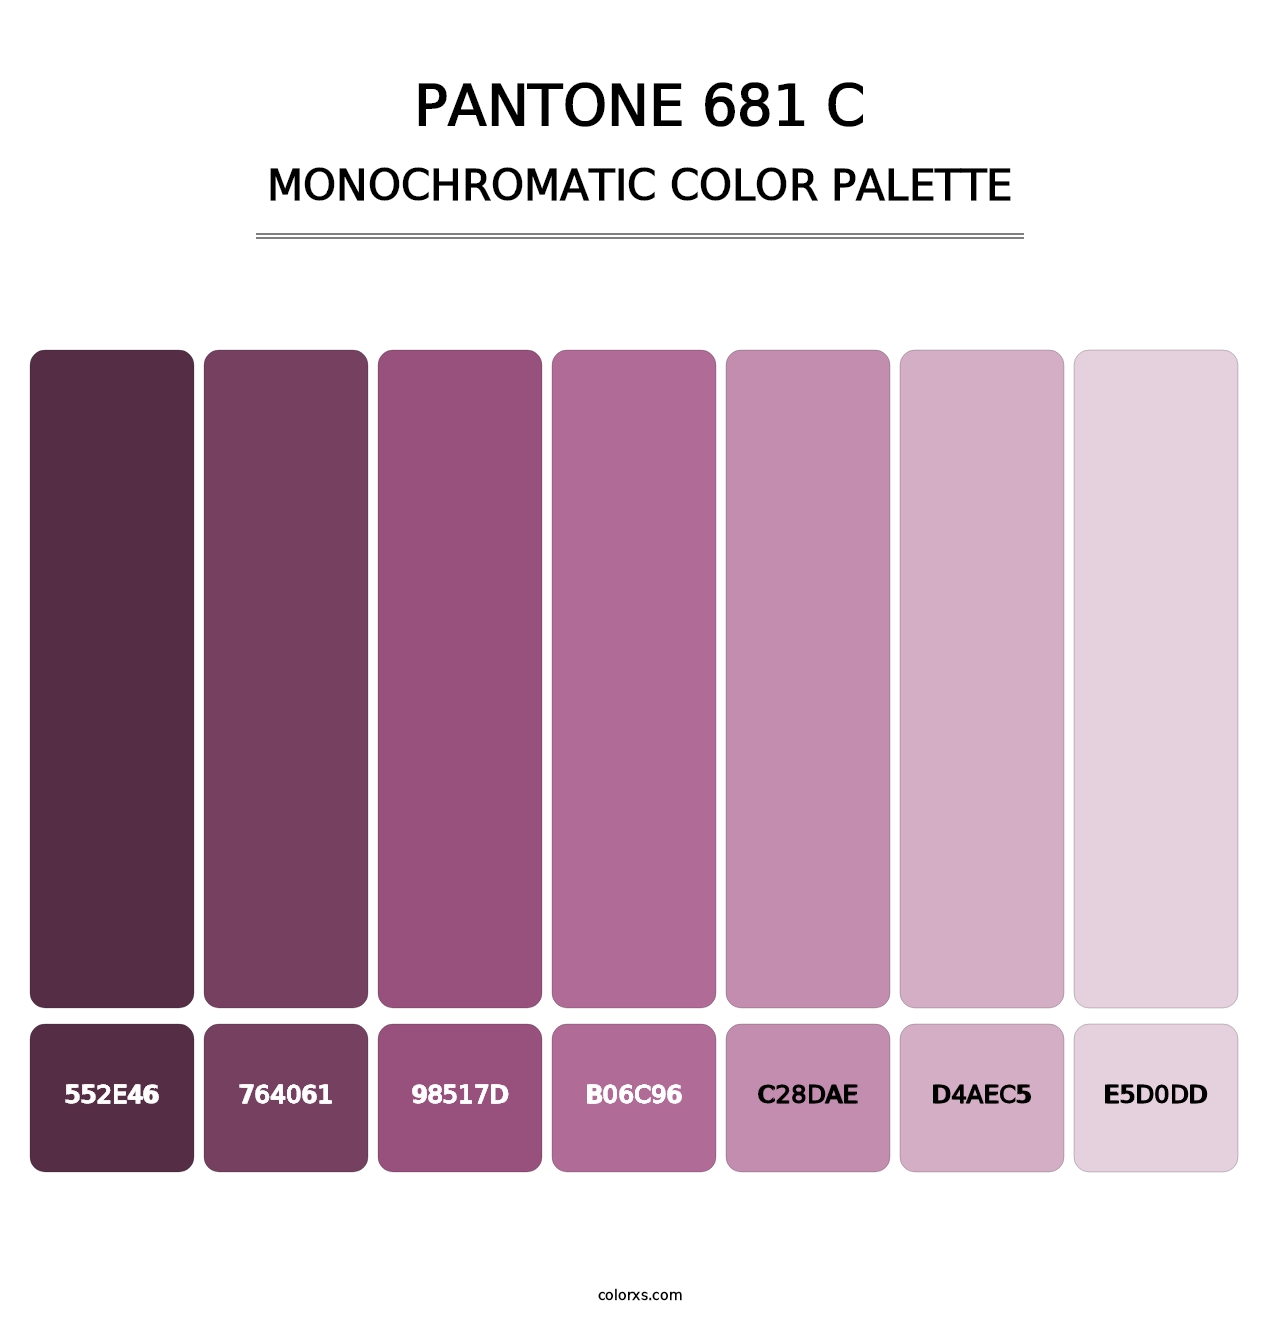 PANTONE 681 C - Monochromatic Color Palette